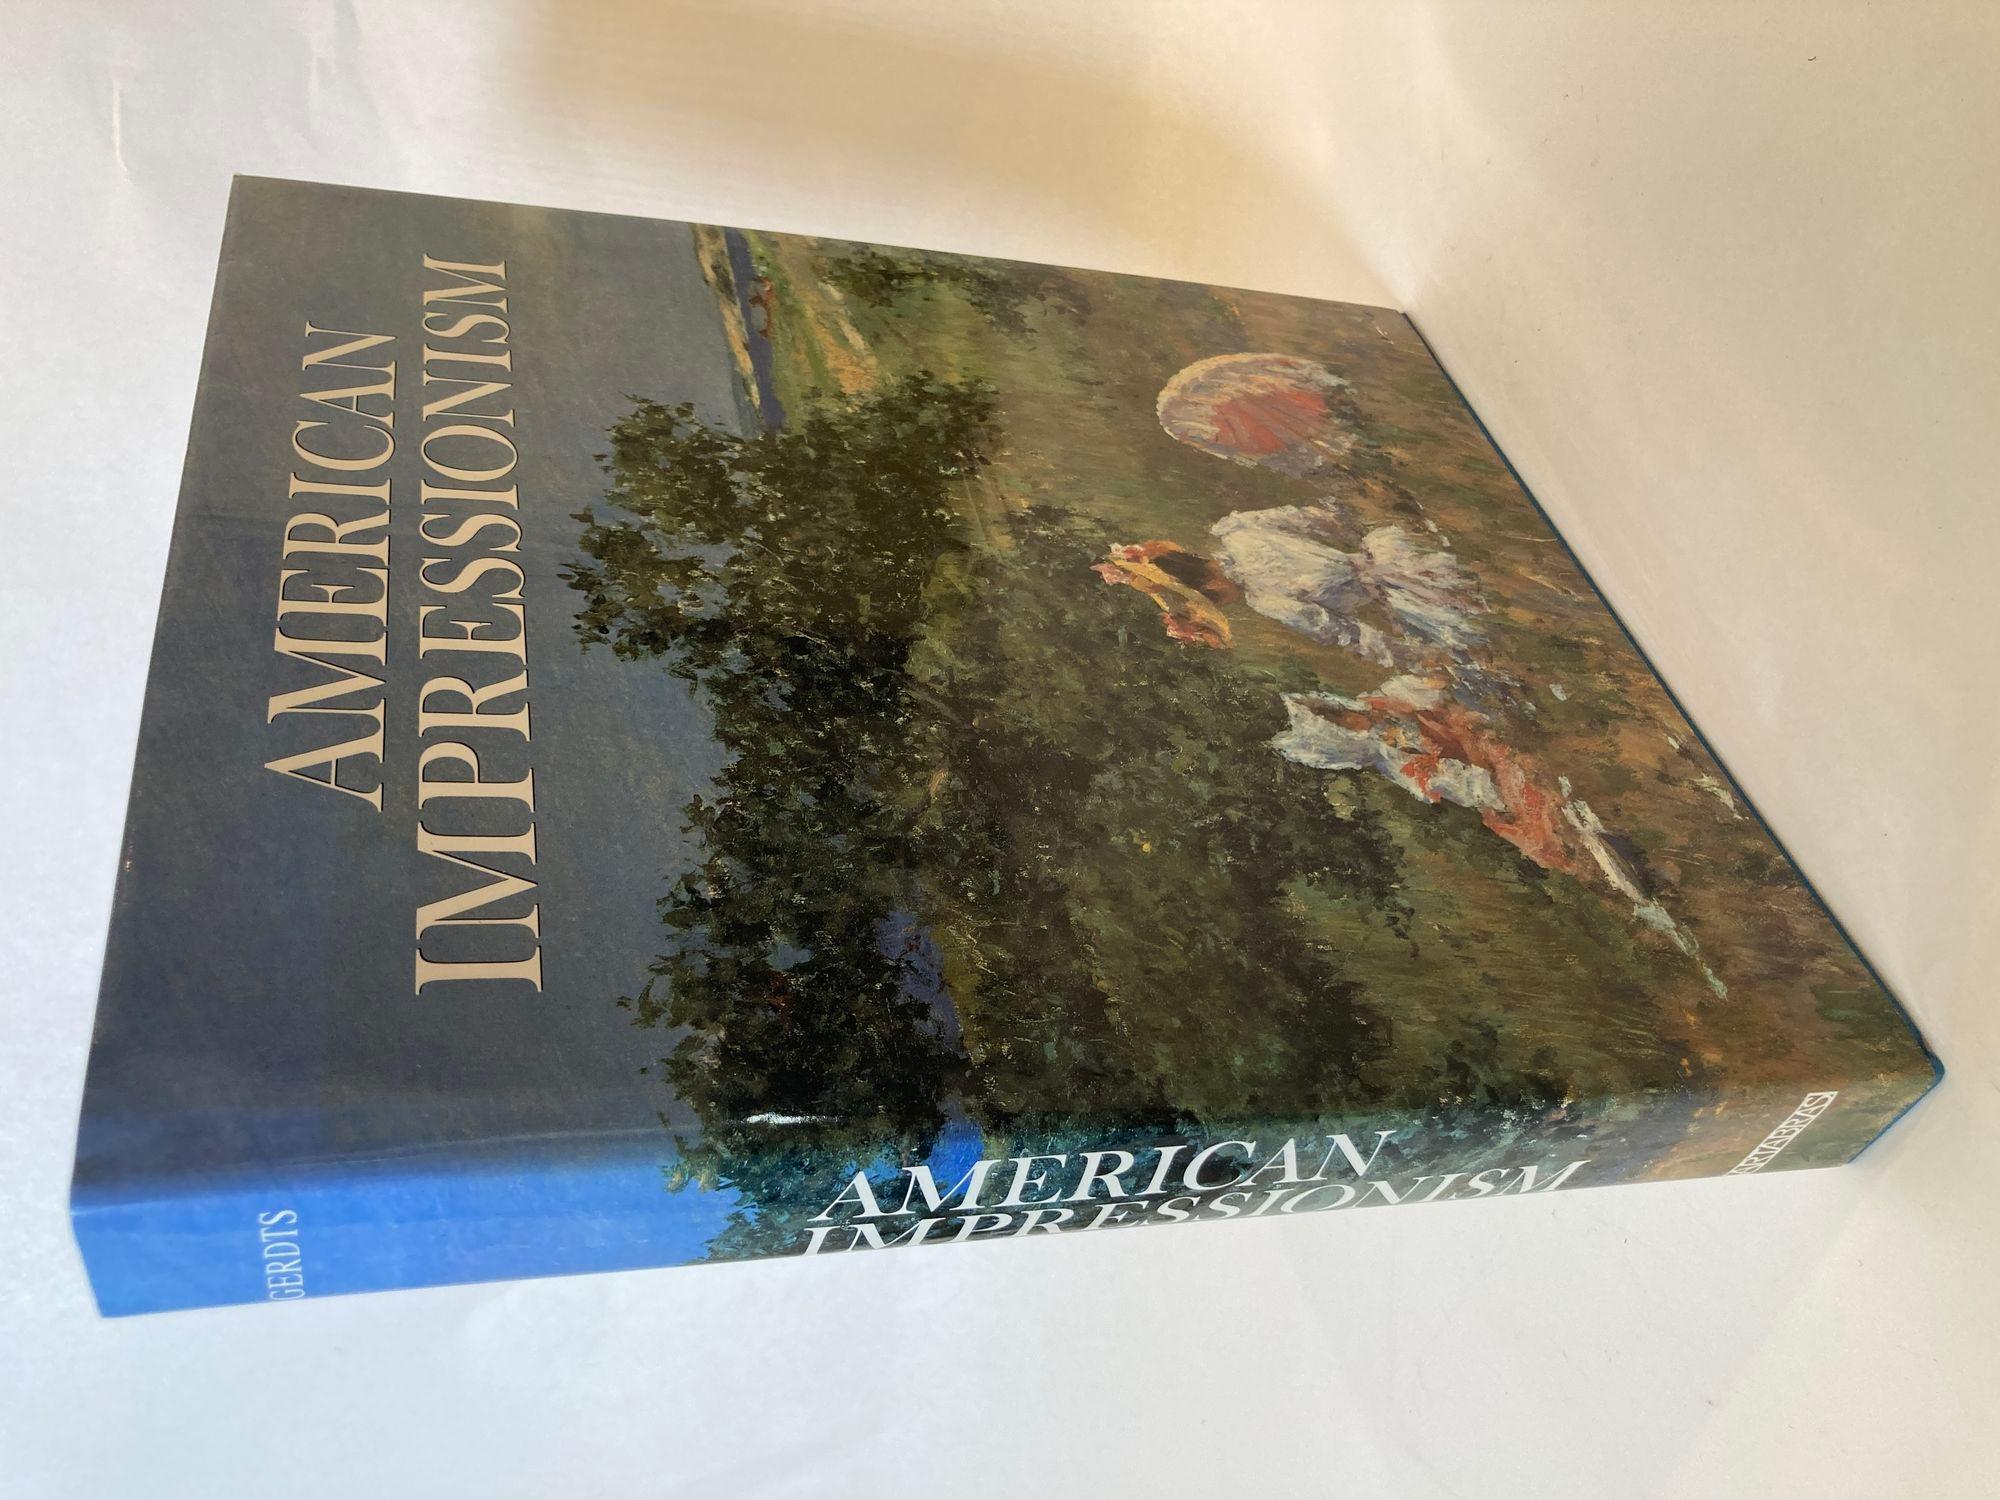 Américain Livre à couverture rigide surdimensionnée de style impressionniste américain de William H. Gerdts en vente